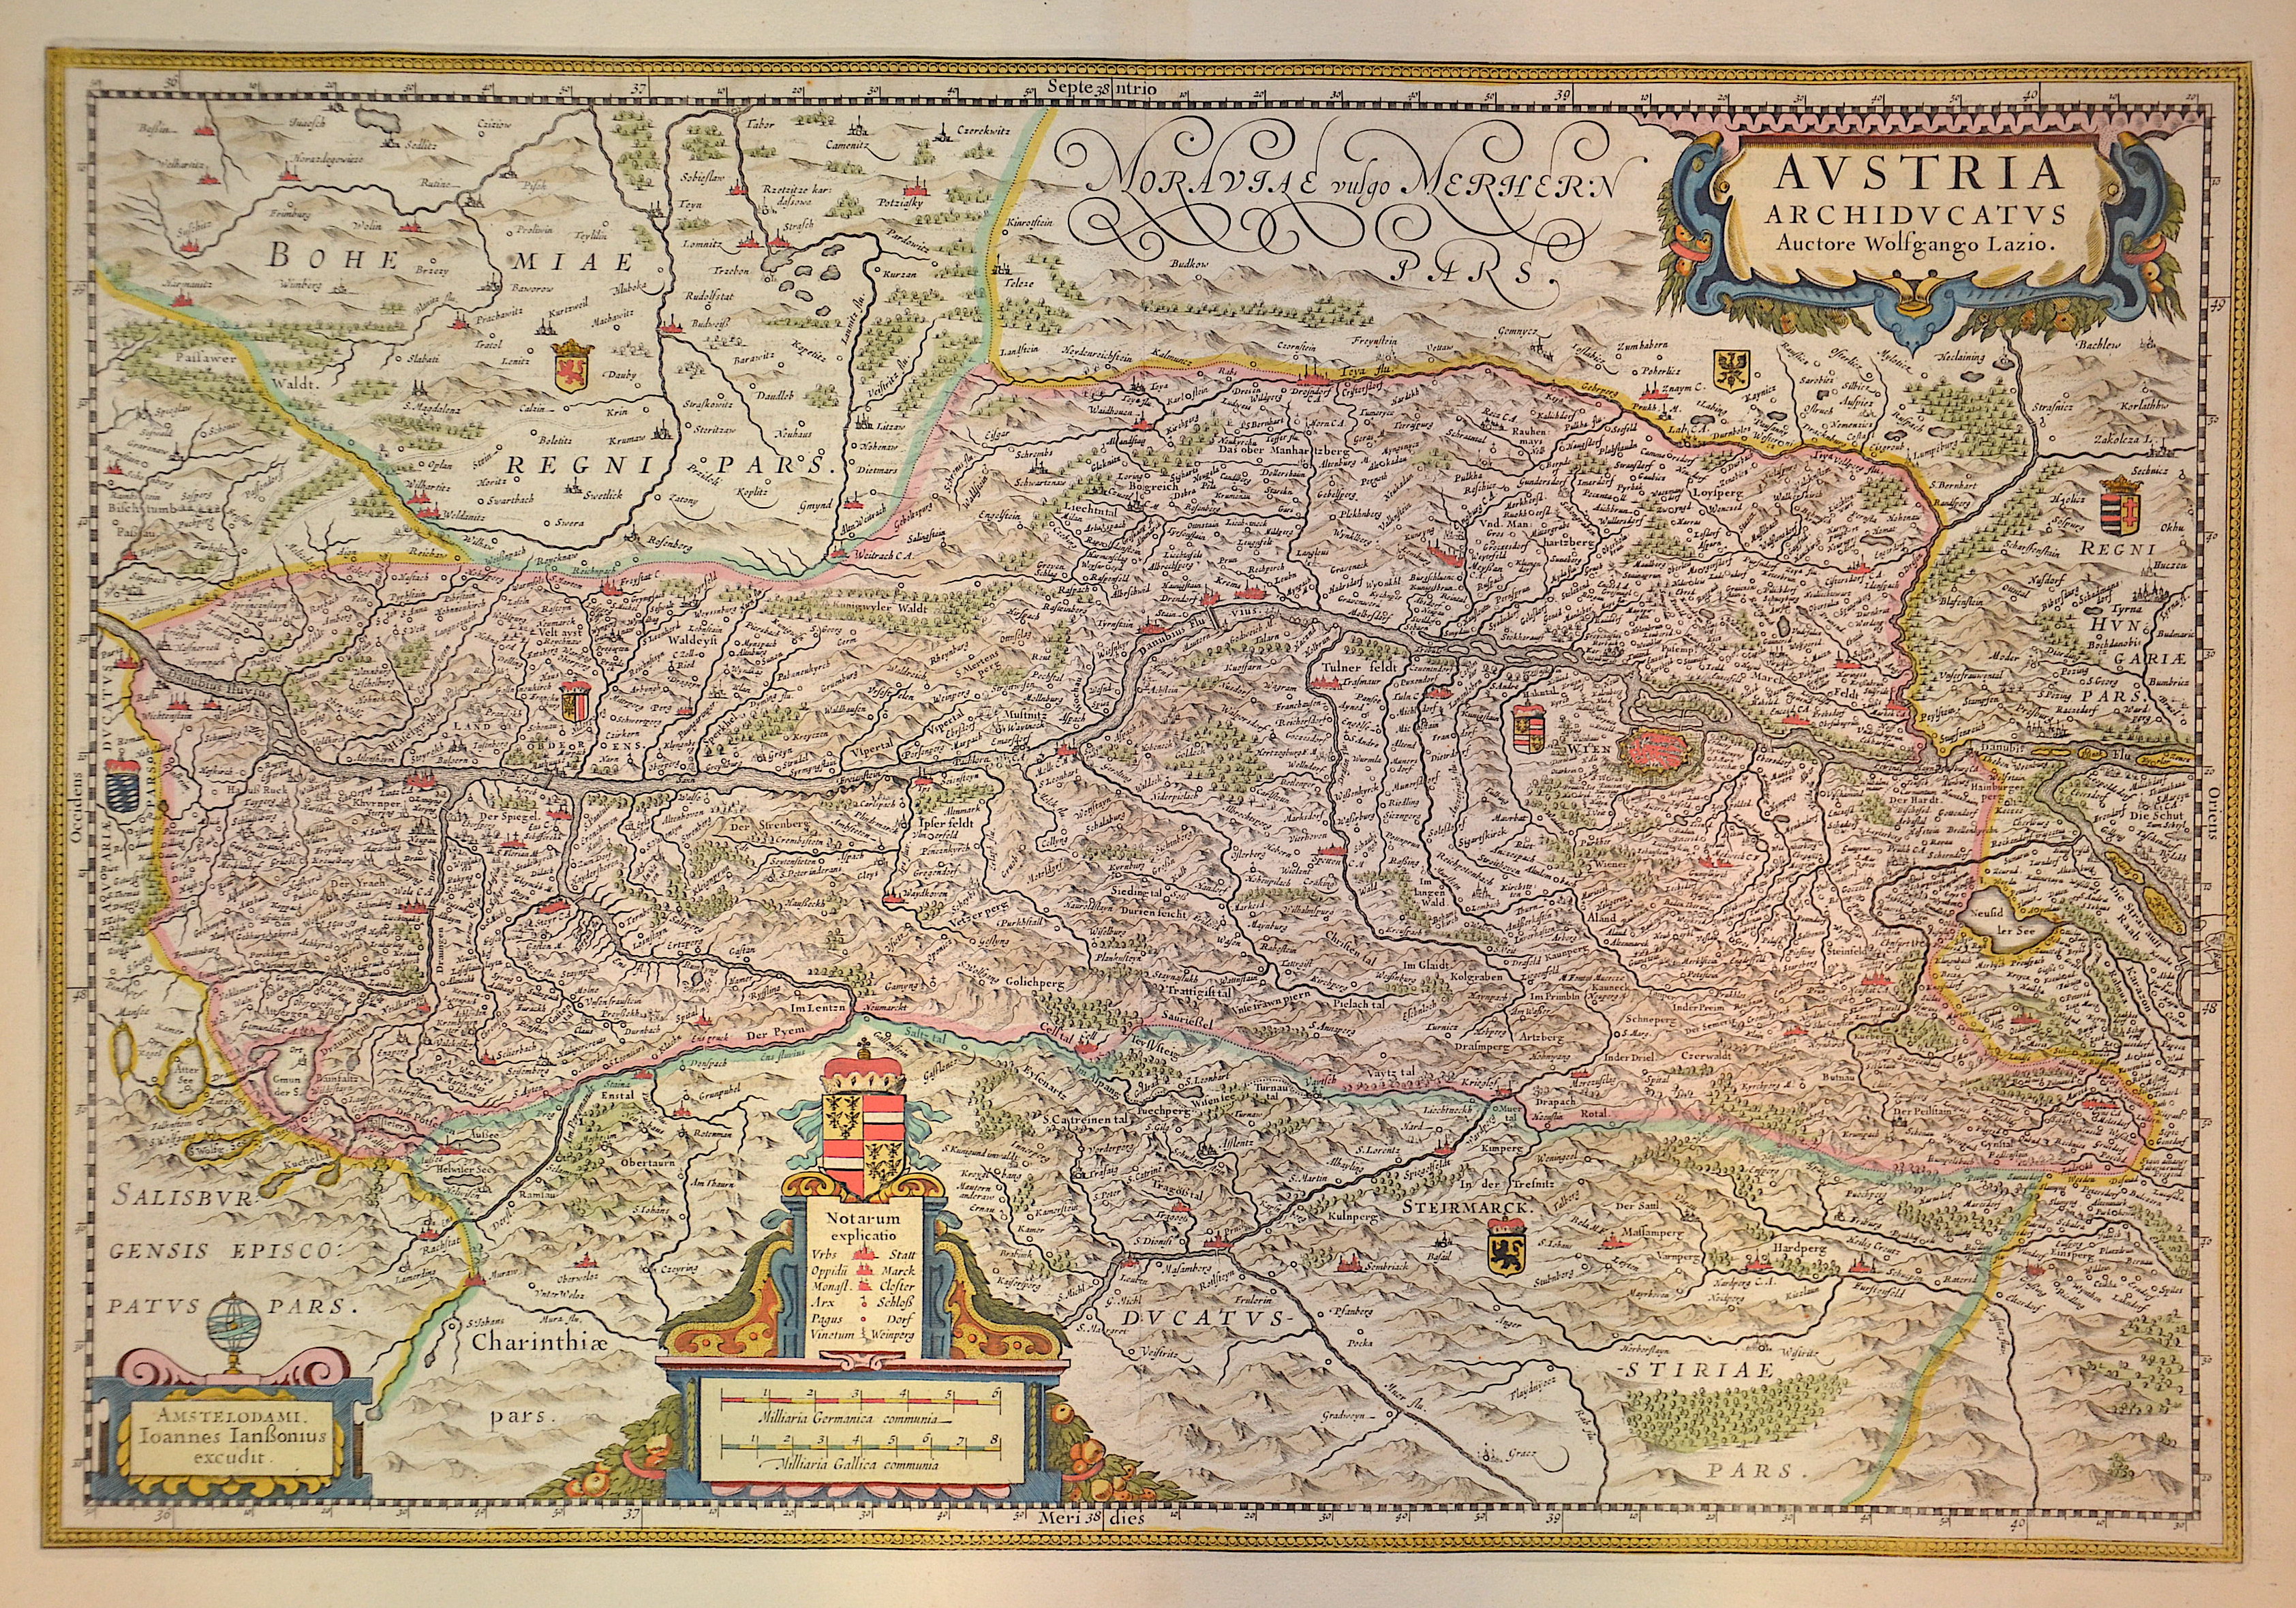 Janssonius/Mercator-Hondius, H.  Austria archiducatus